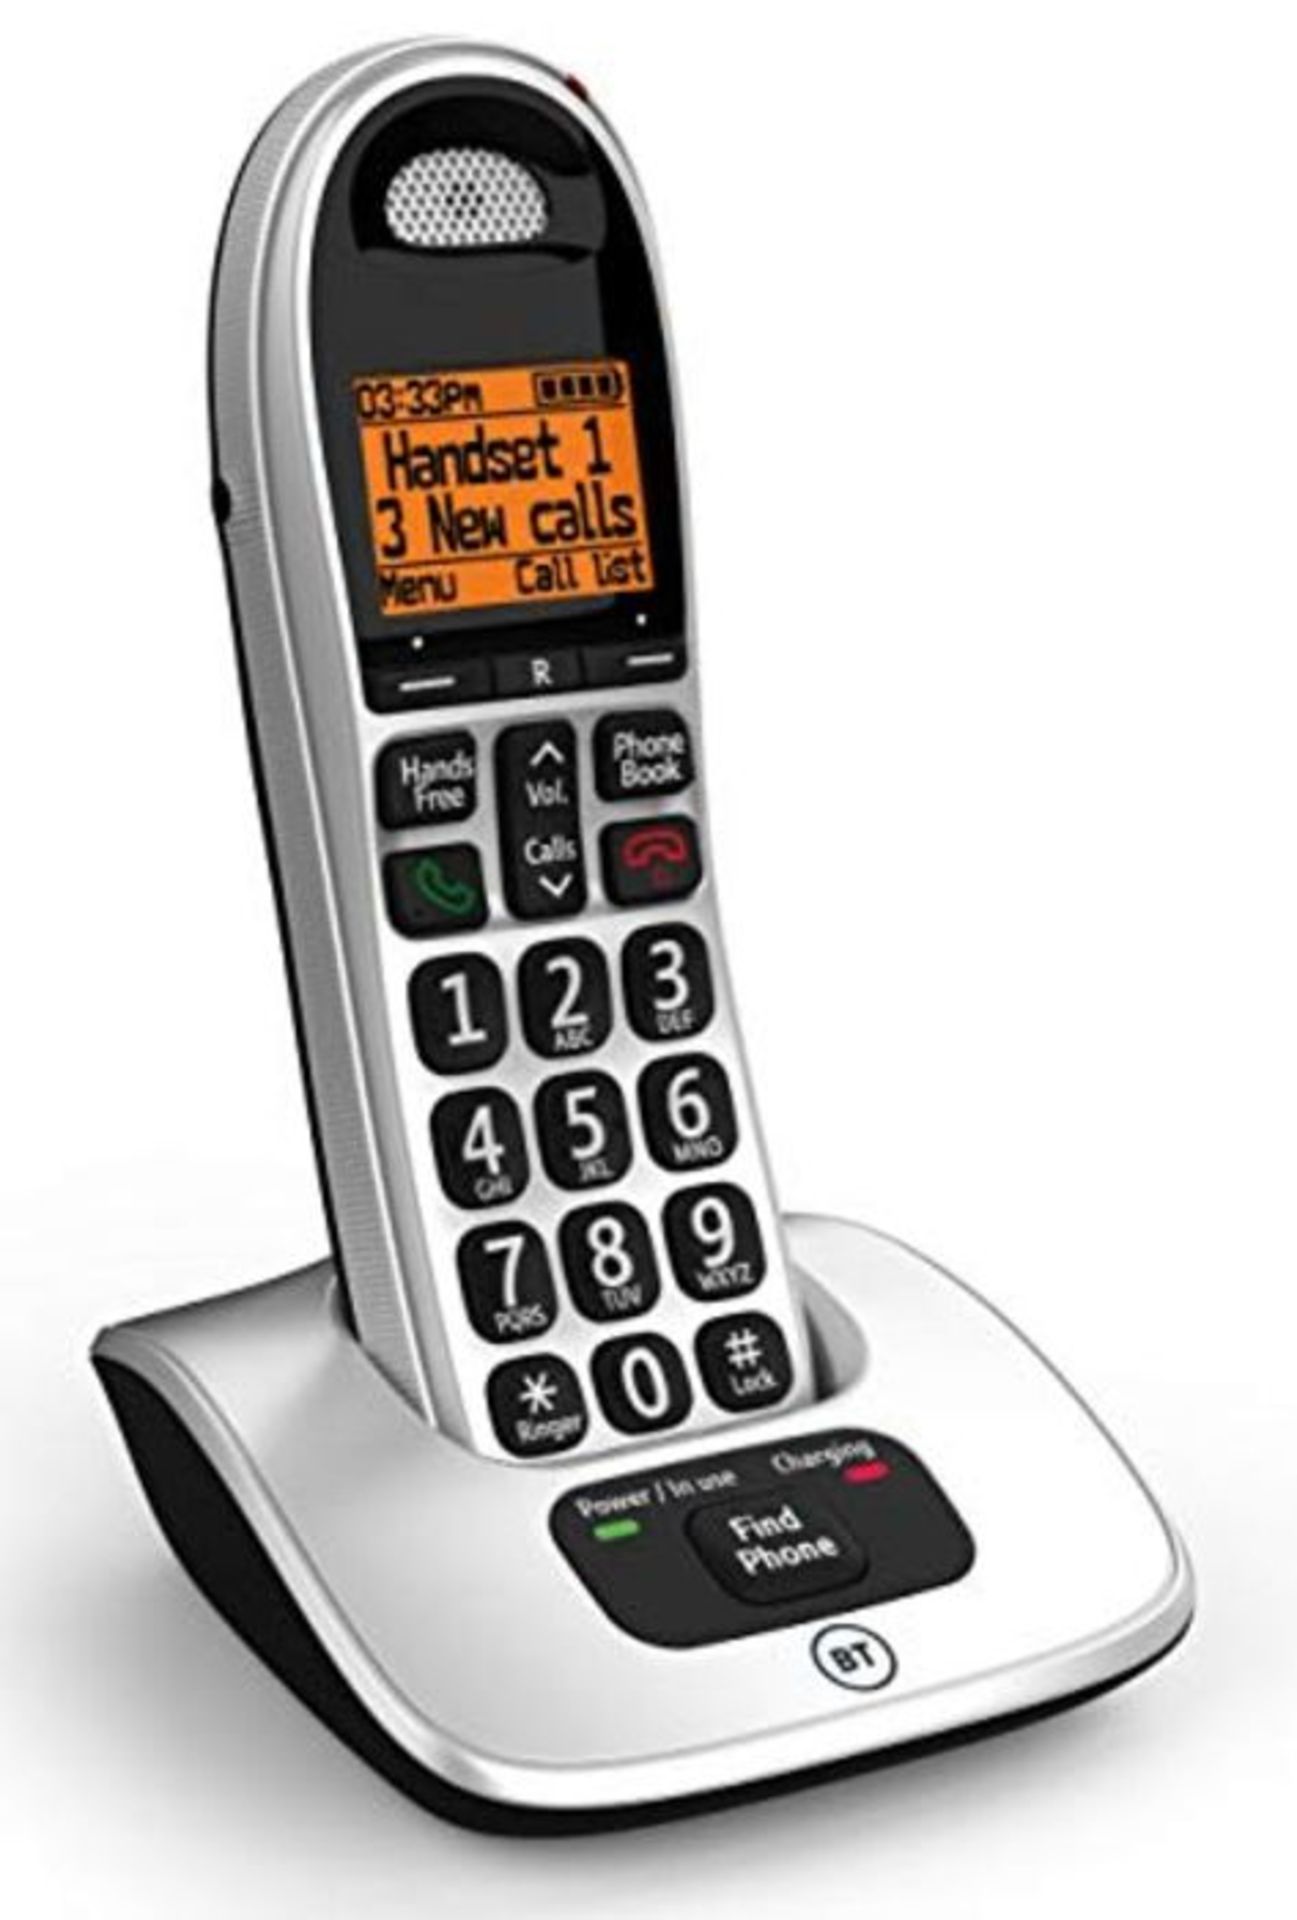 BT 4000 Big Button Advanced Call Blocker Home Phone